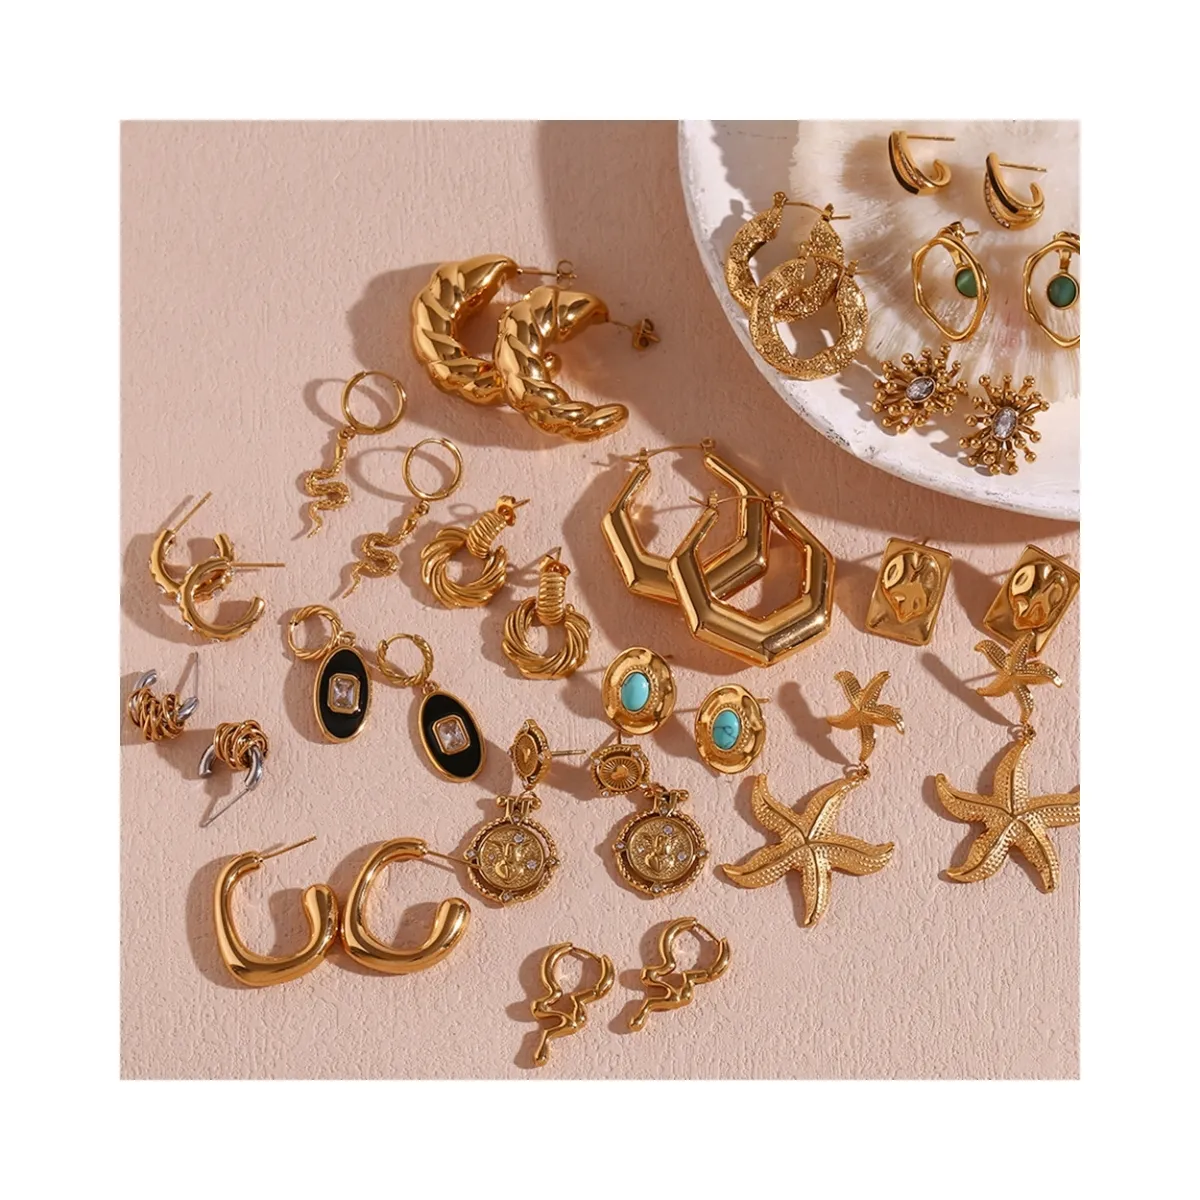 HP stainless steel starfish earrings Vintage geometric shape hoop earrings 18k gold plated stud earrings women